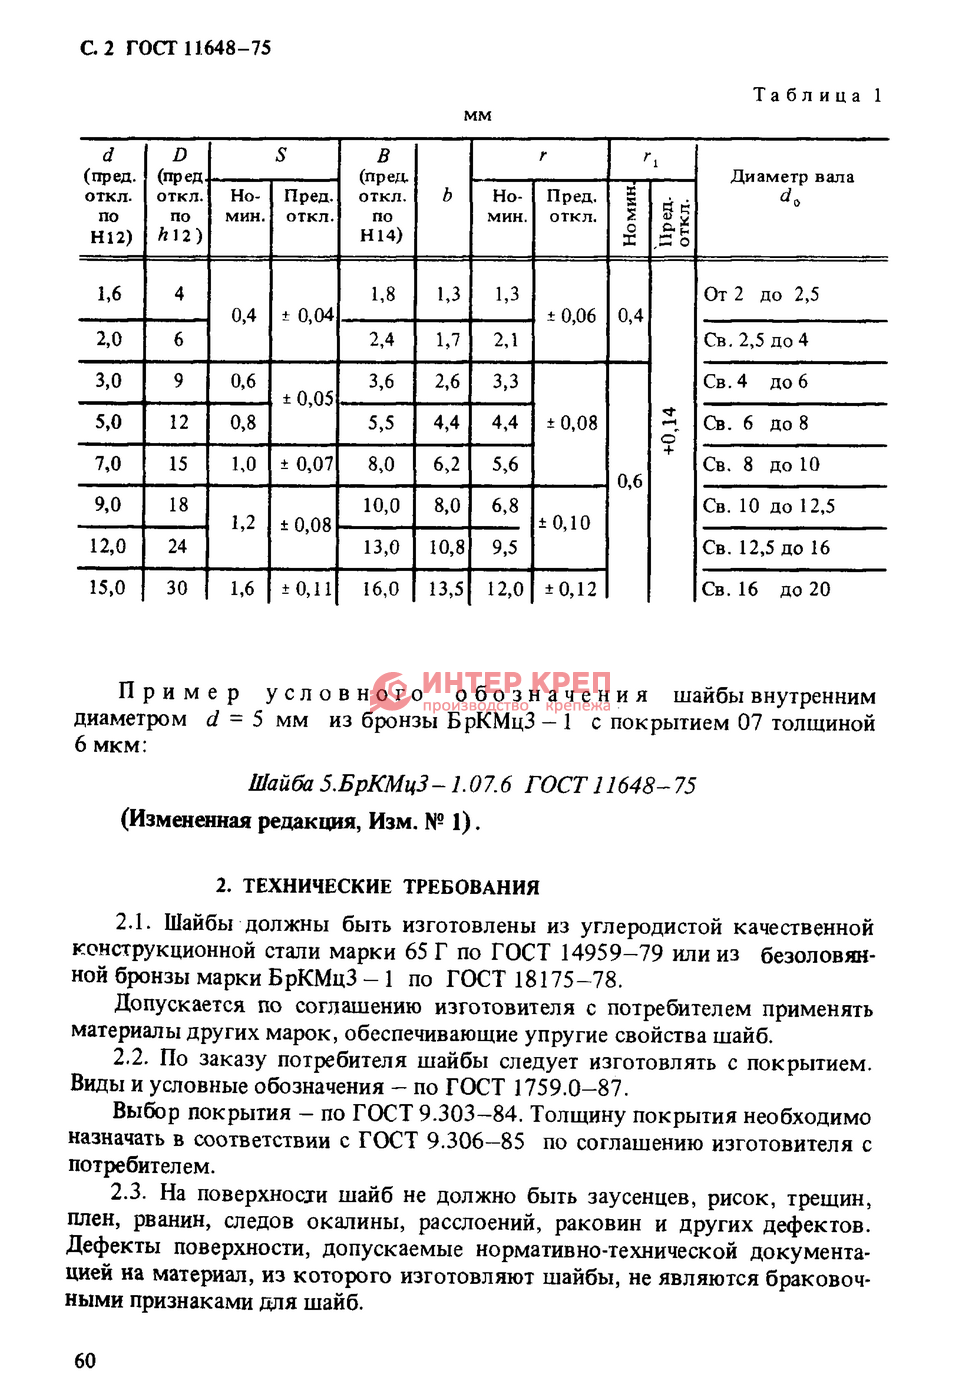 Шайбы упорные быстросъемные ГОСТ 11648-75  в Екатеринбурге: цена .